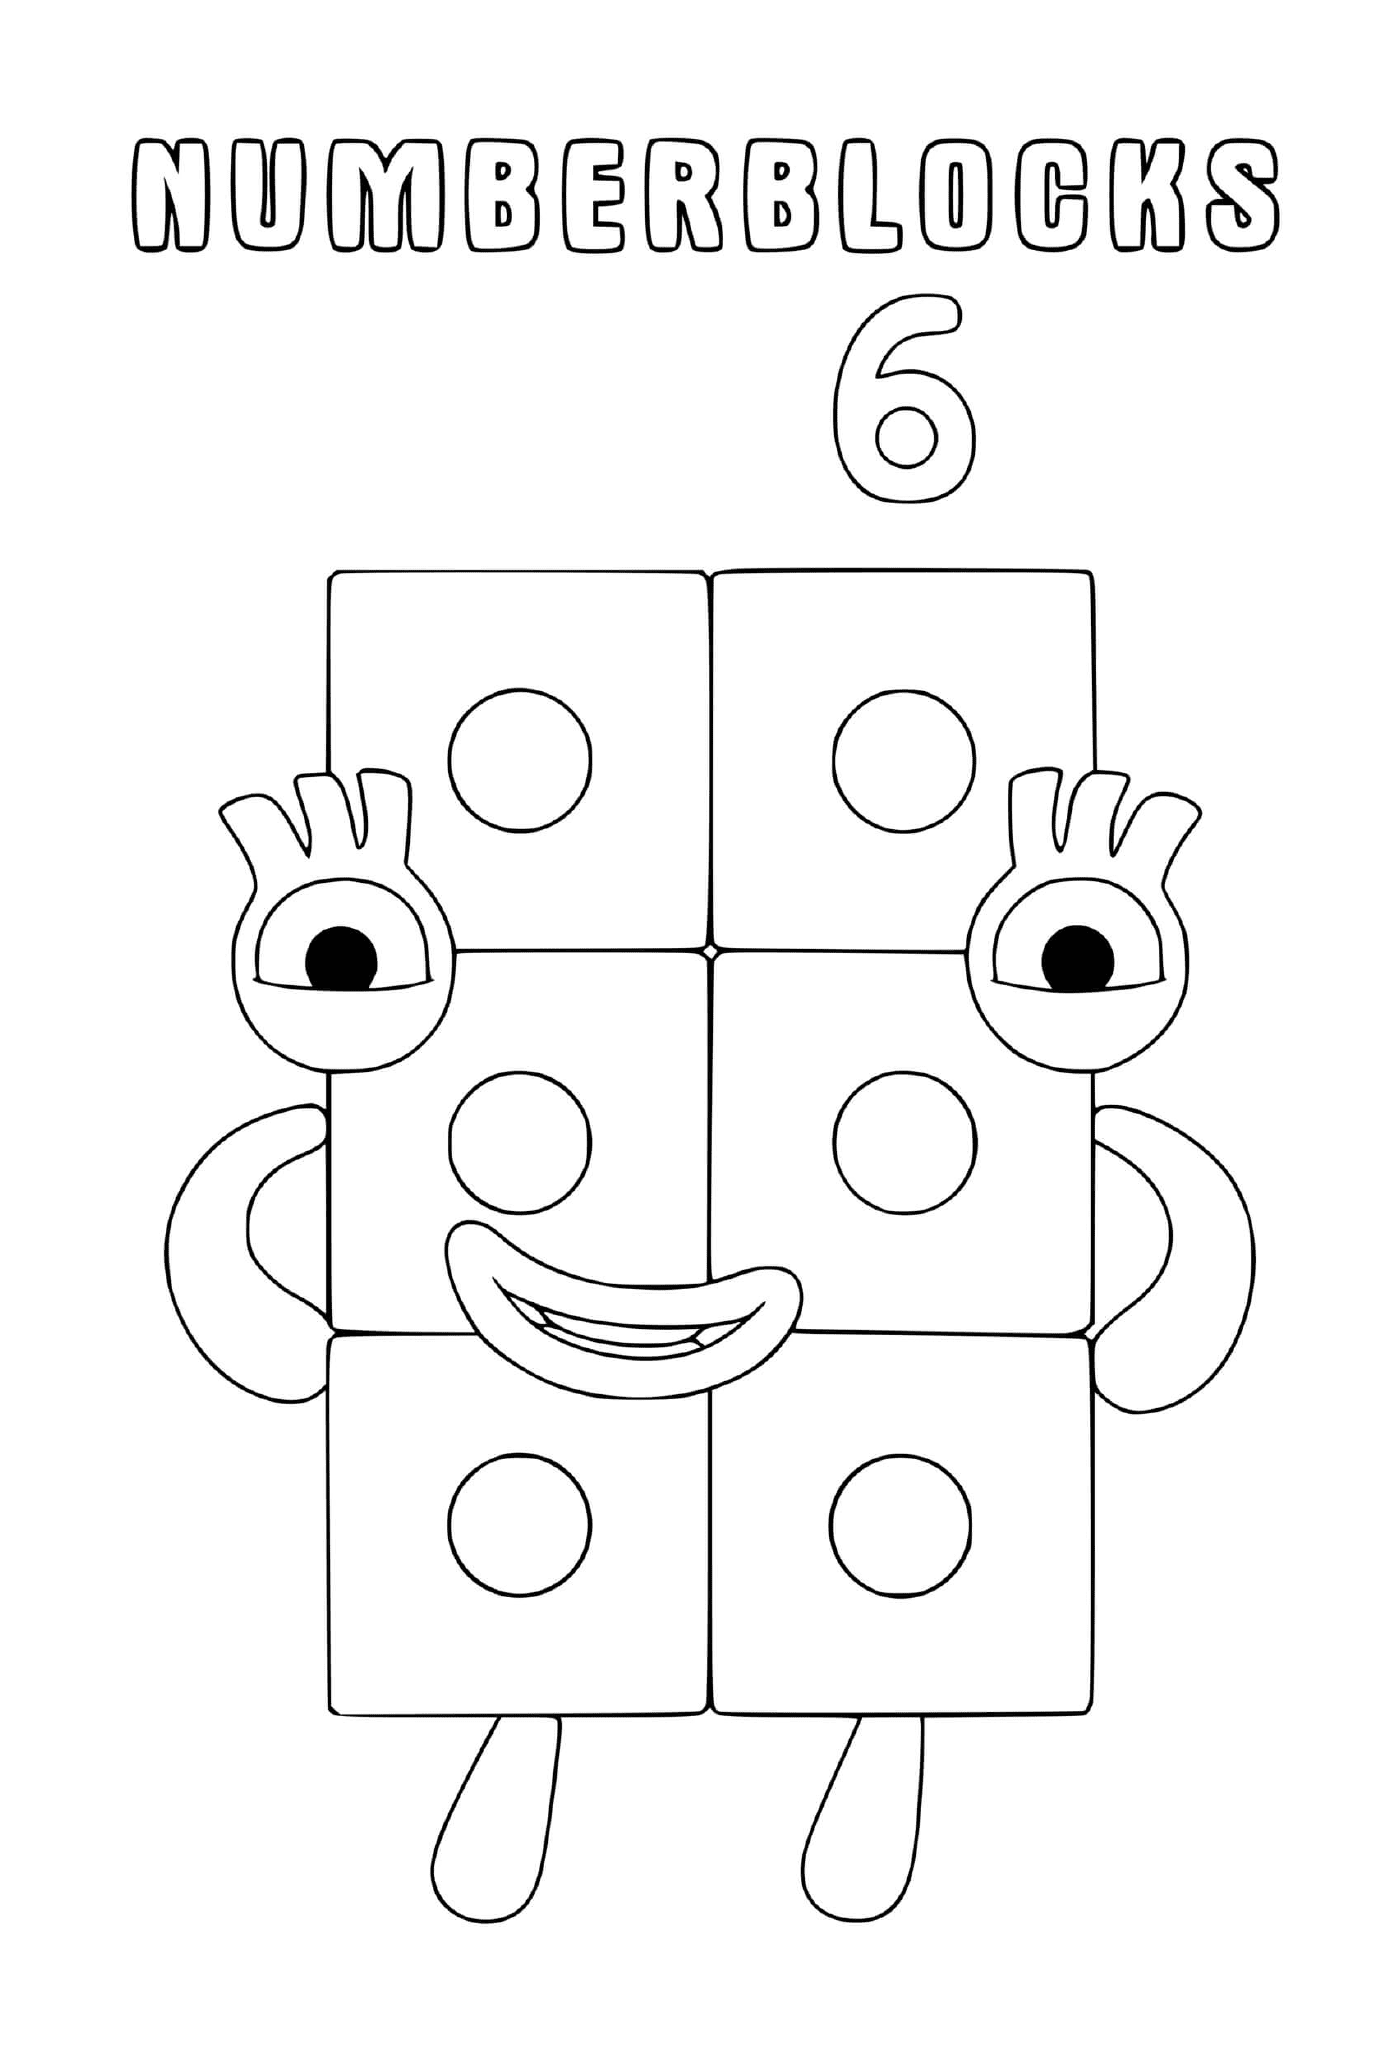   Numéro 6 des Numberblocks, un bloc avec des yeux 